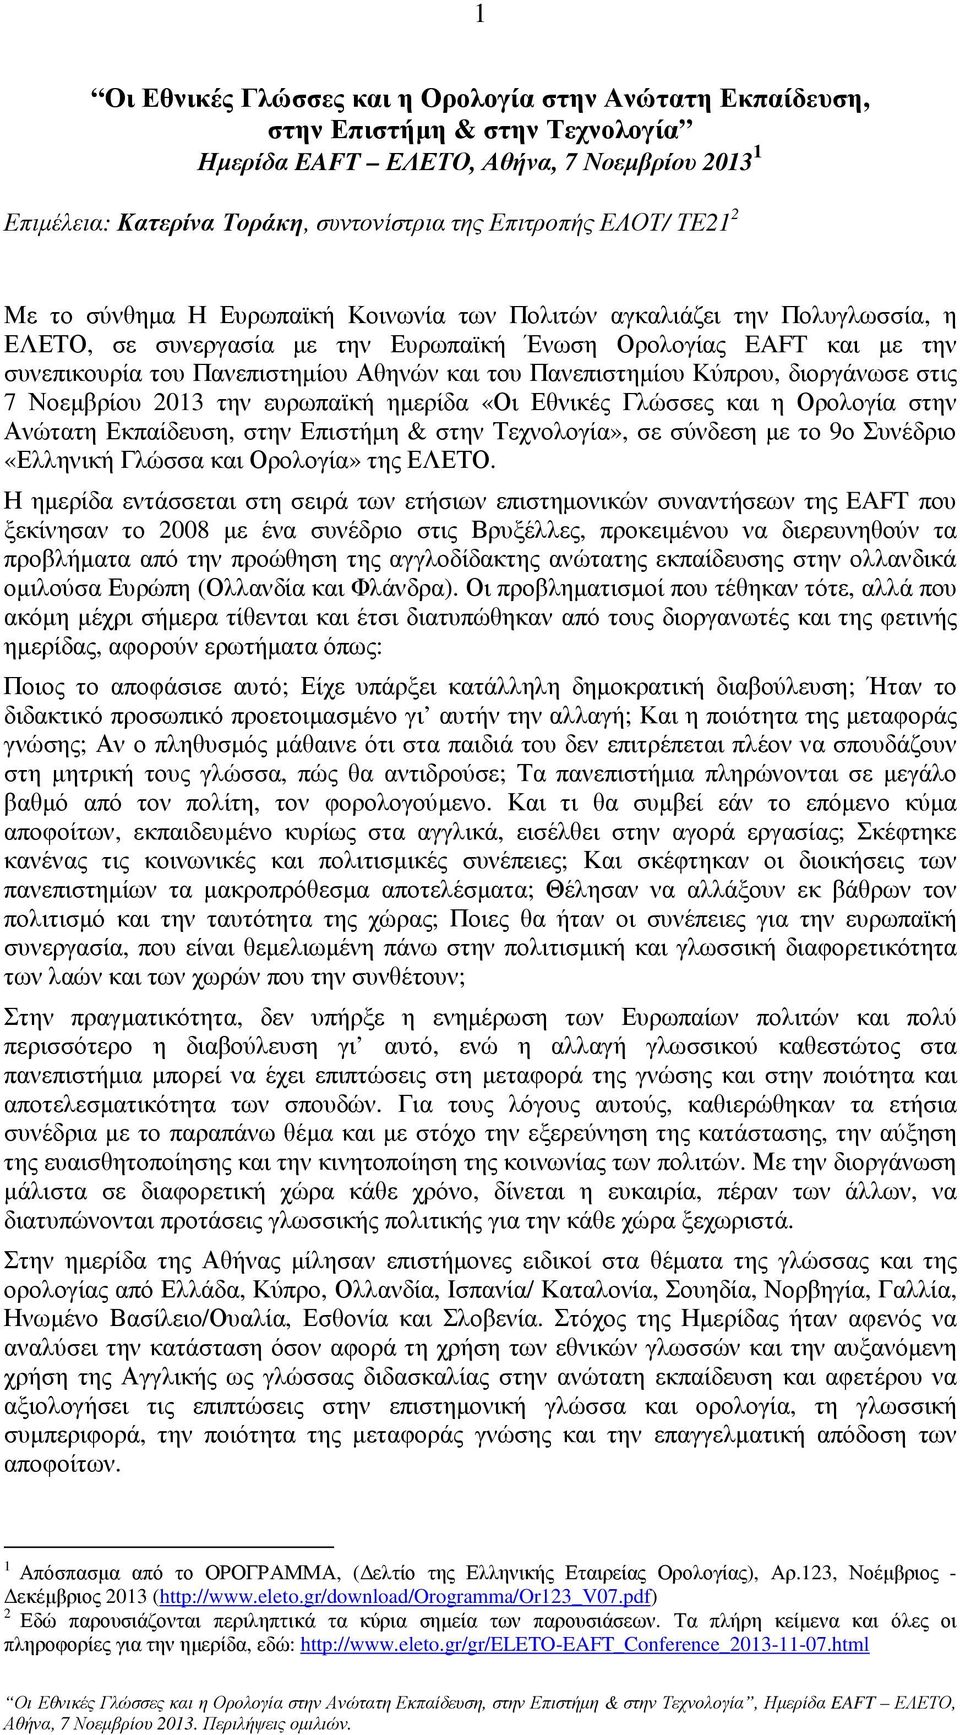 Πανεπιστηµίου Κύπρου, διοργάνωσε στις 7 Νοεµβρίου 2013 την ευρωπαϊκή ηµερίδα «Οι Εθνικές Γλώσσες και η Ορολογία στην Ανώτατη Εκπαίδευση, στην Επιστήµη & στην Τεχνολογία», σε σύνδεση µε το 9ο Συνέδριο